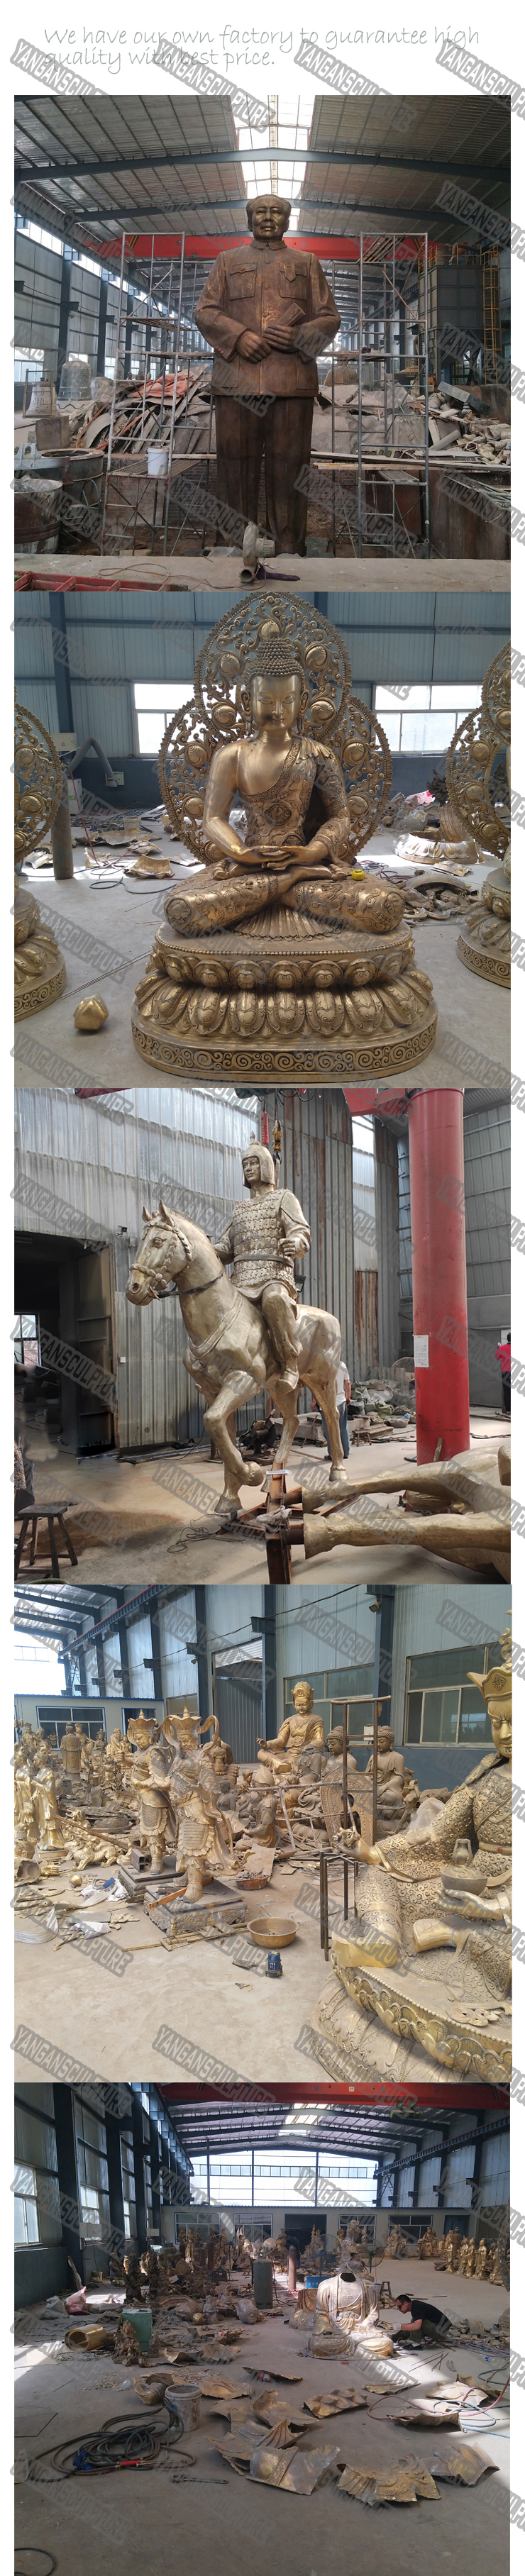 Горячая продажа популярная садовая большая бронзовая статуя лошади в натуральную величину